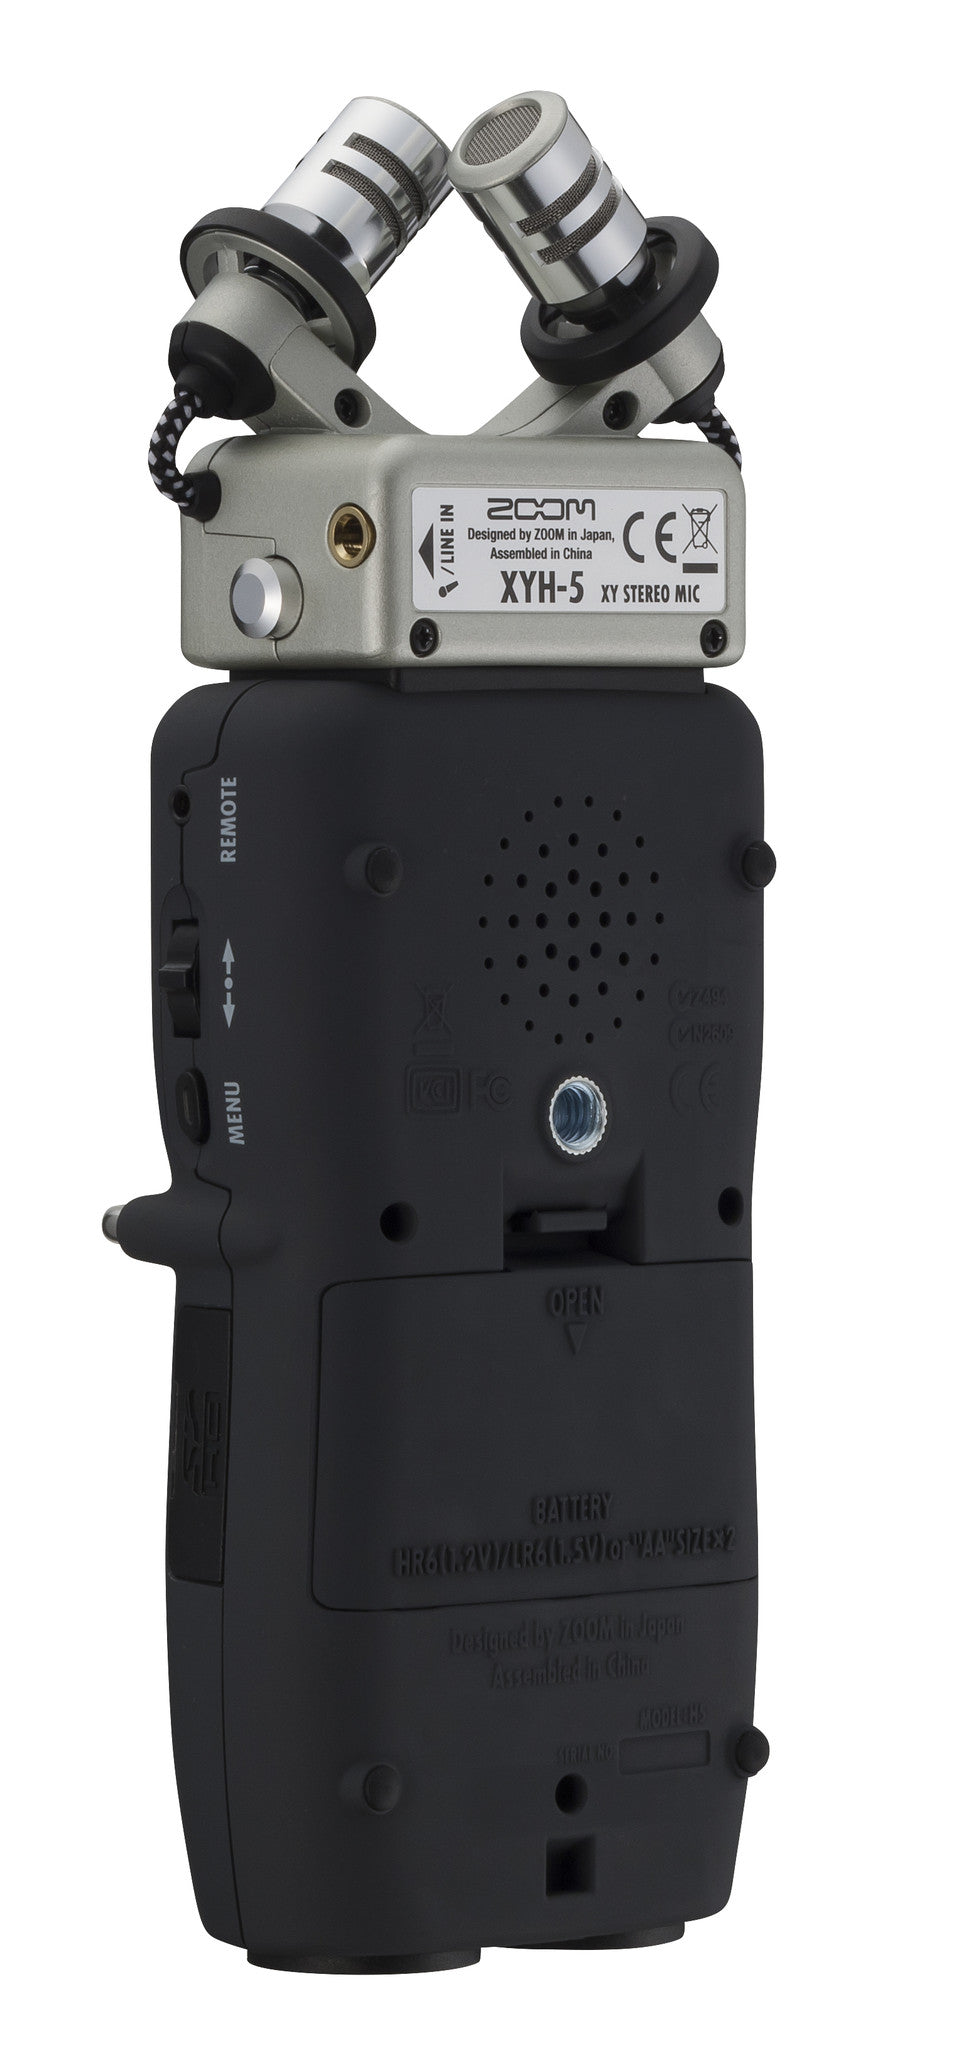 Zoom H5 Handy Recorder, video audio microphones & recorders, Zoom - Pictureline  - 5